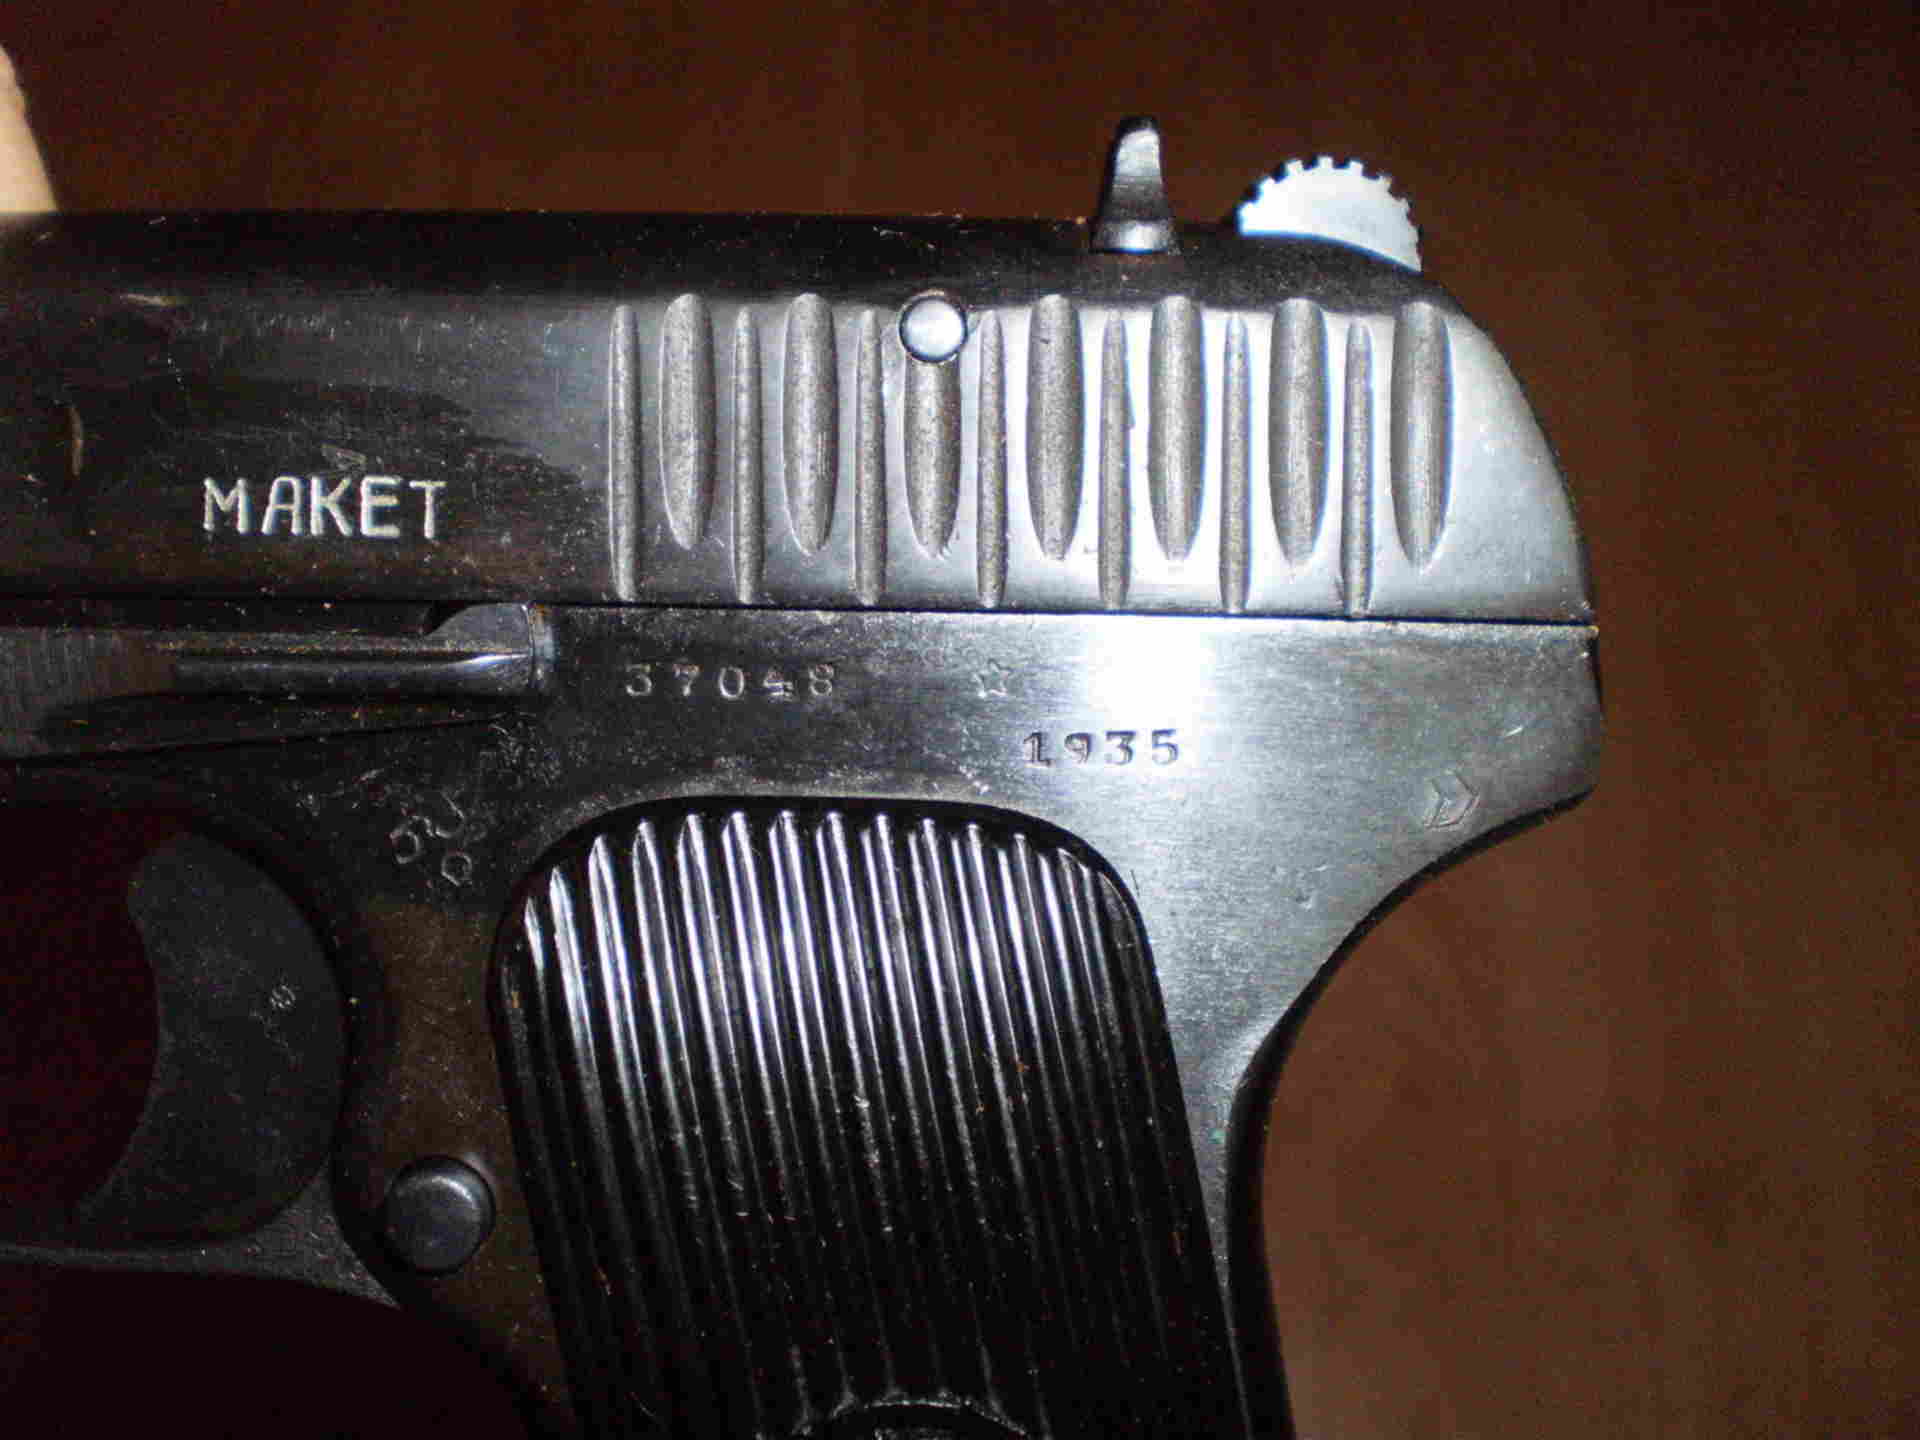 Год выпуска делали. ТТ-33 1935. ТТ маркировка. Маркировка пистолетов ТТ.